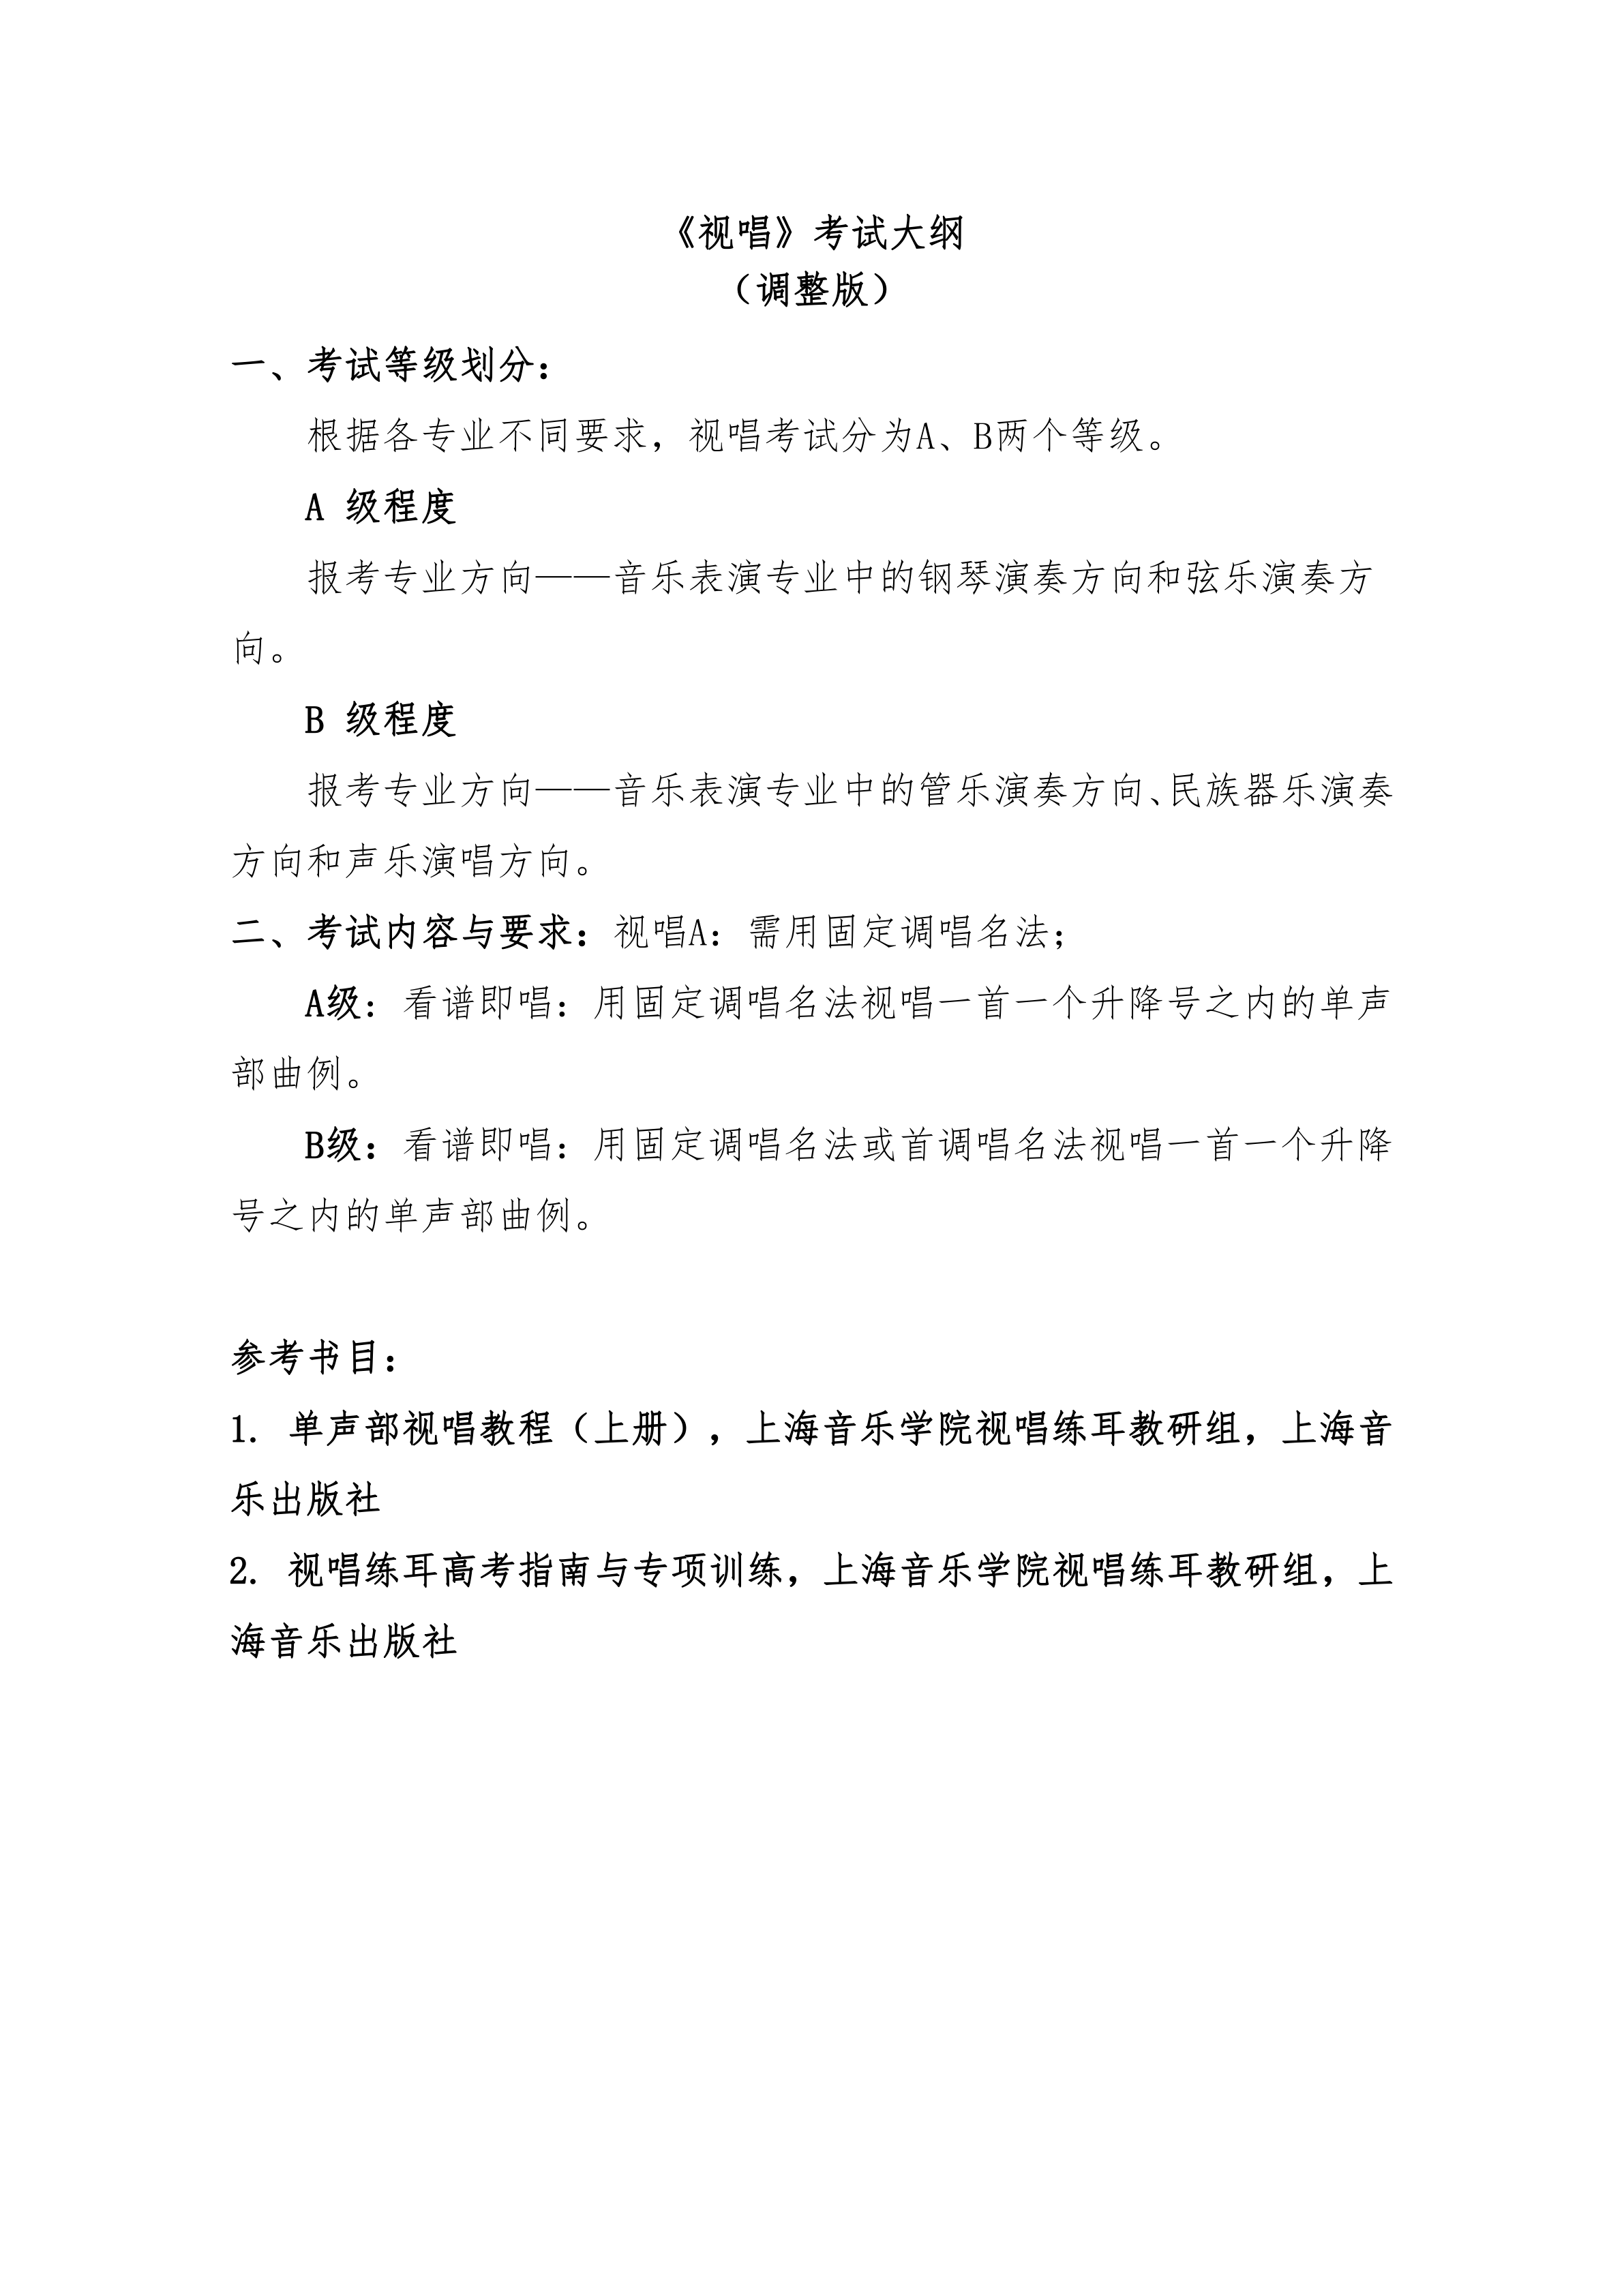 附件2：+《上海大学音乐学院2021年音乐表演专业复试考试内容及校考成绩计算方法（调整版）》_7.png